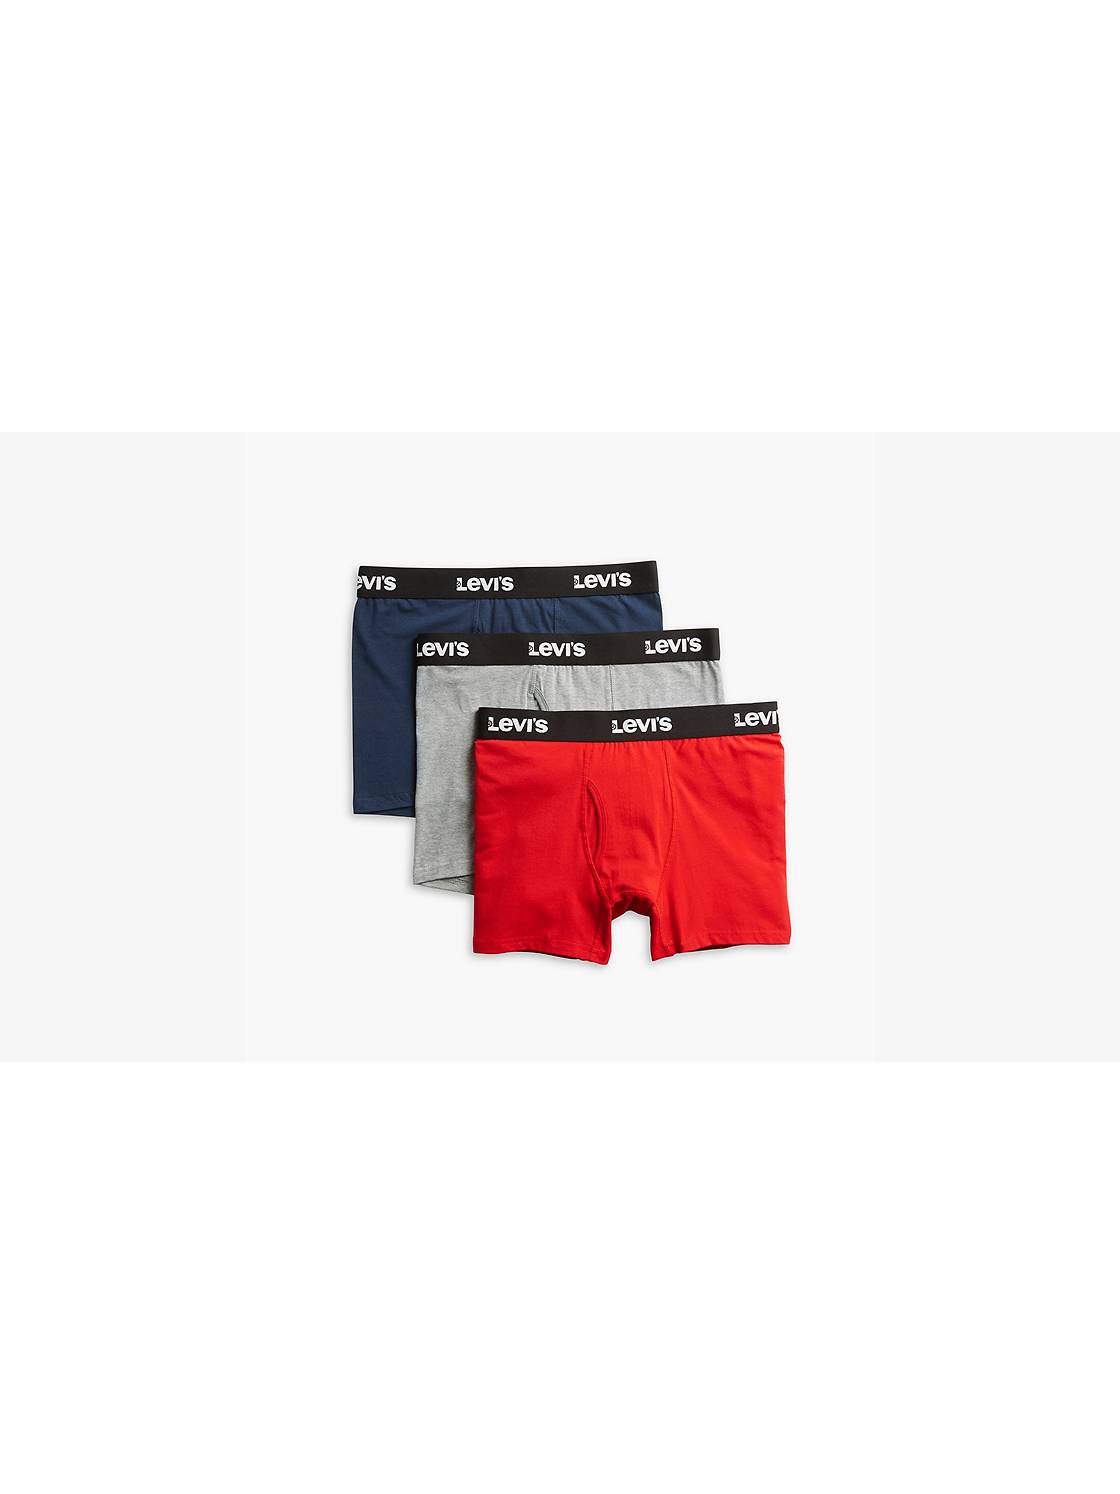 Levi's Mens Boxer Briefs Mens Underwear 6 Pack Breathable Cotton